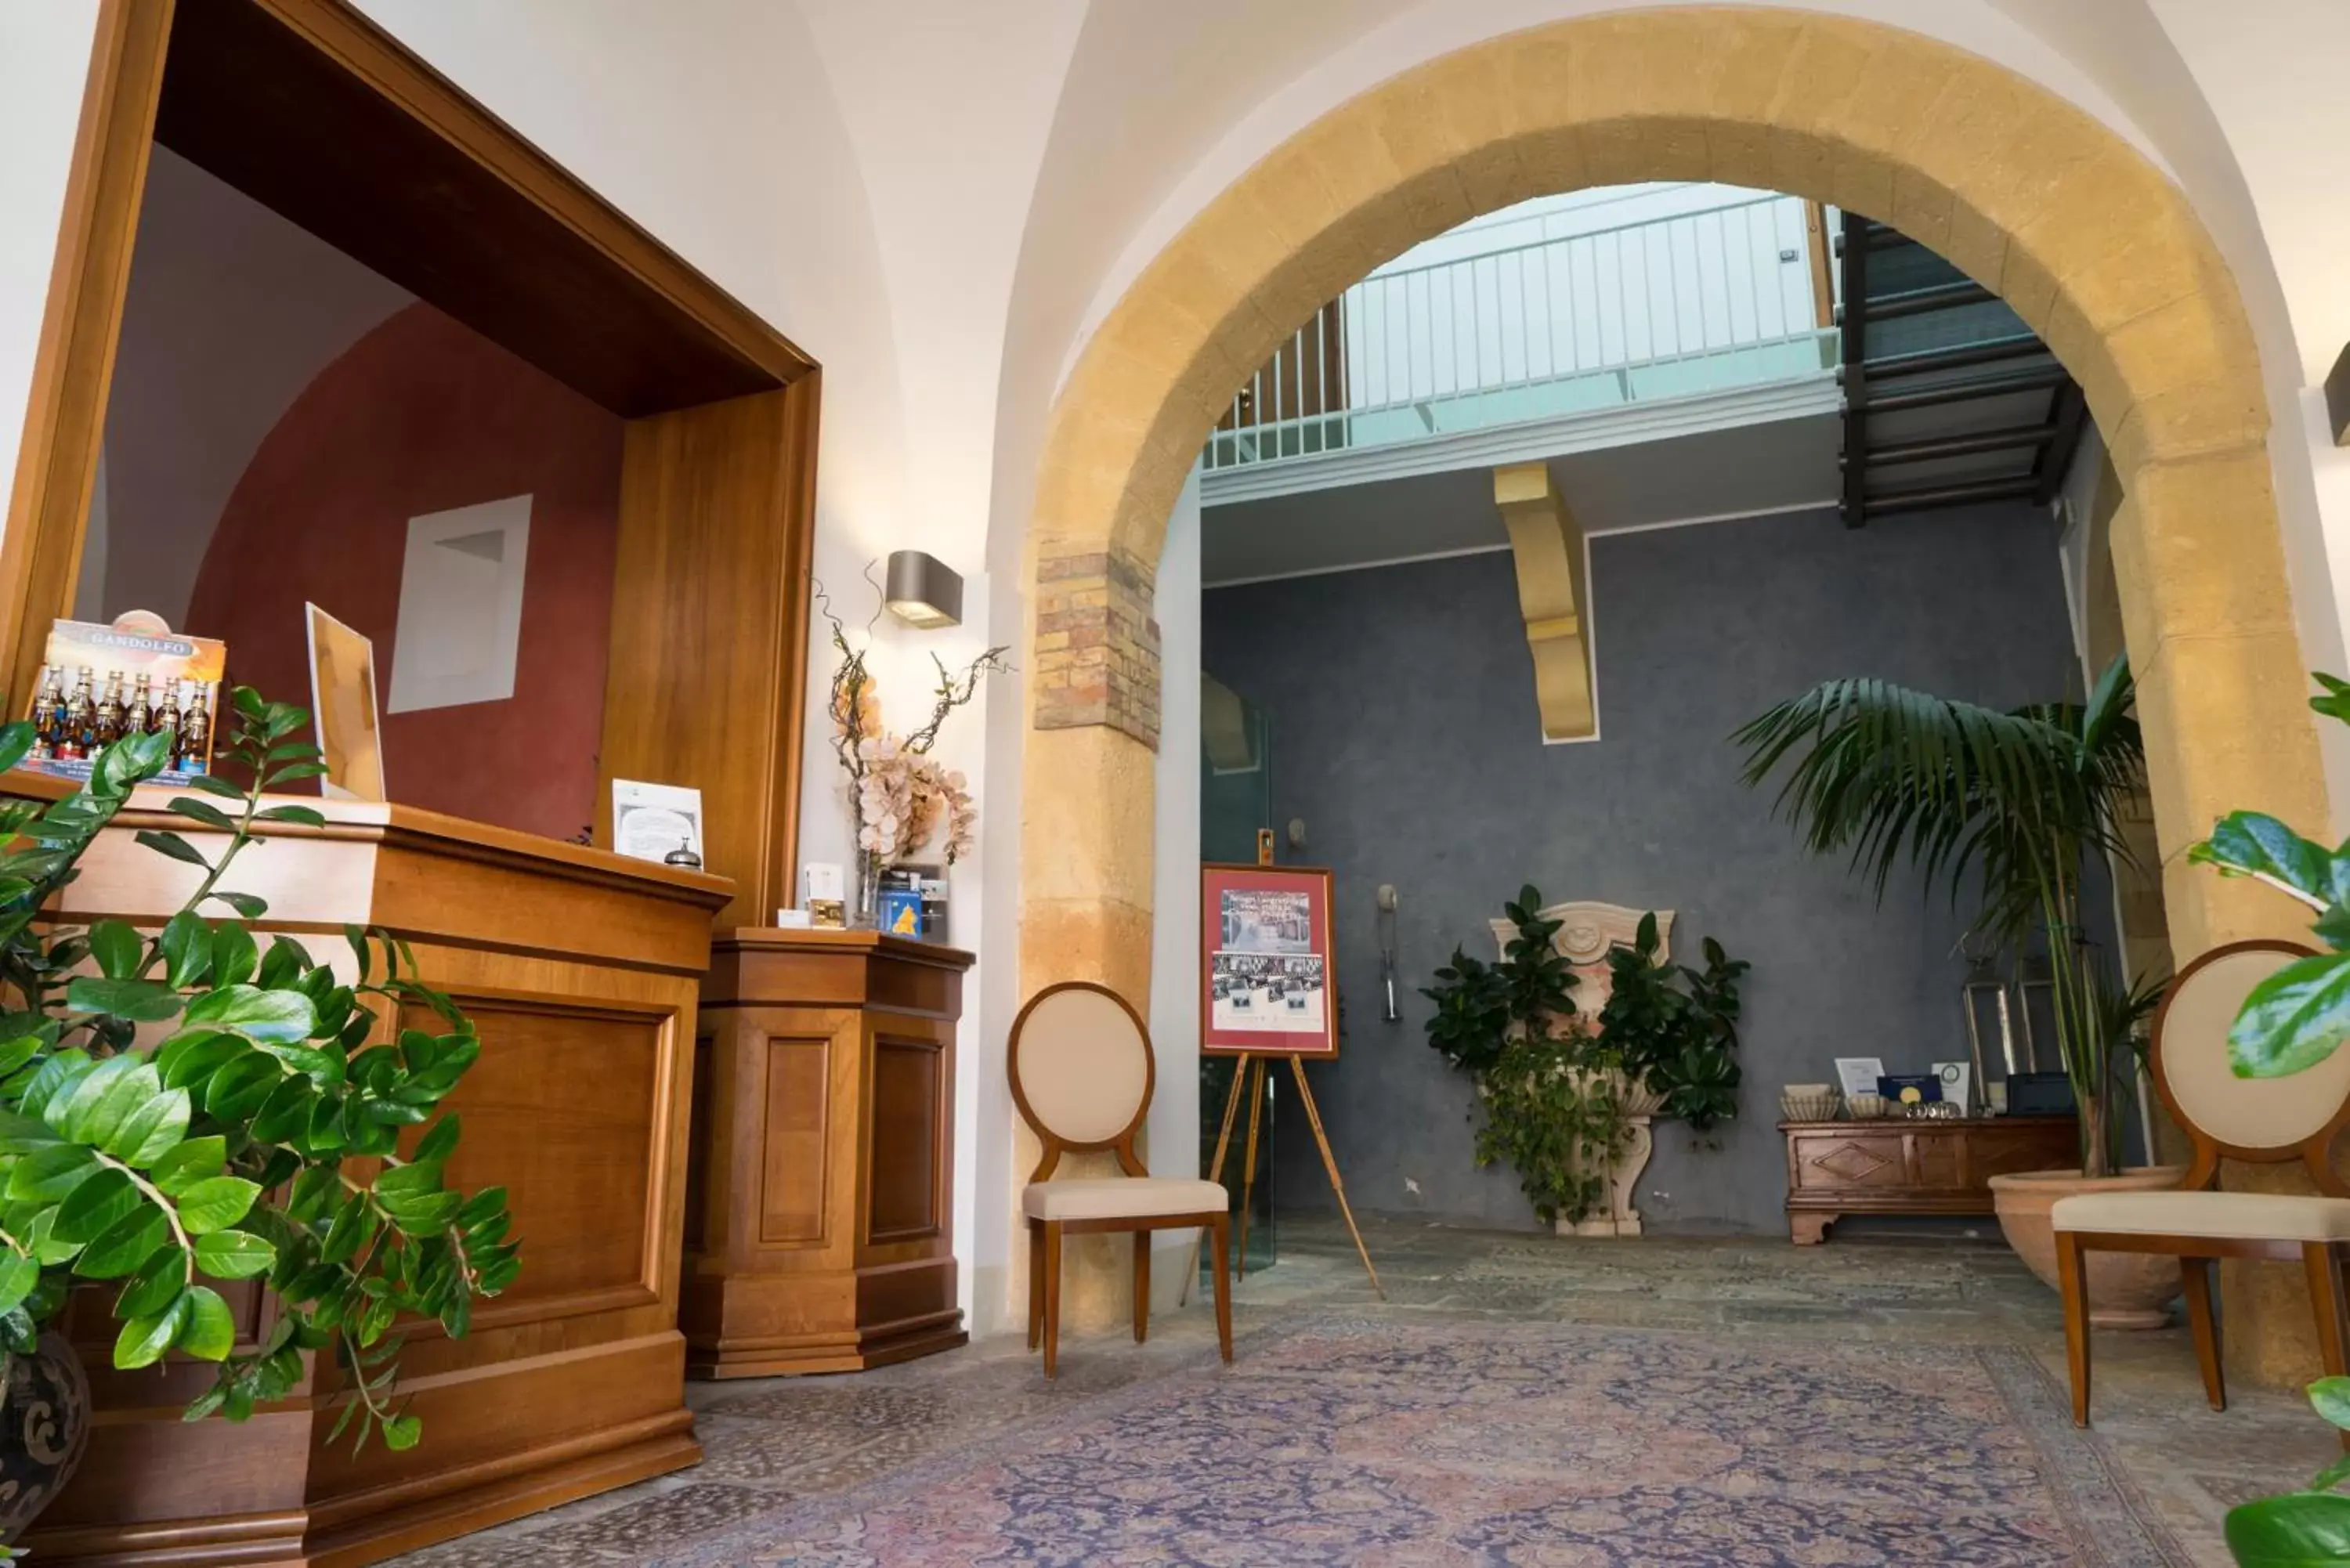 Lobby or reception, Lobby/Reception in Hotel Carmine